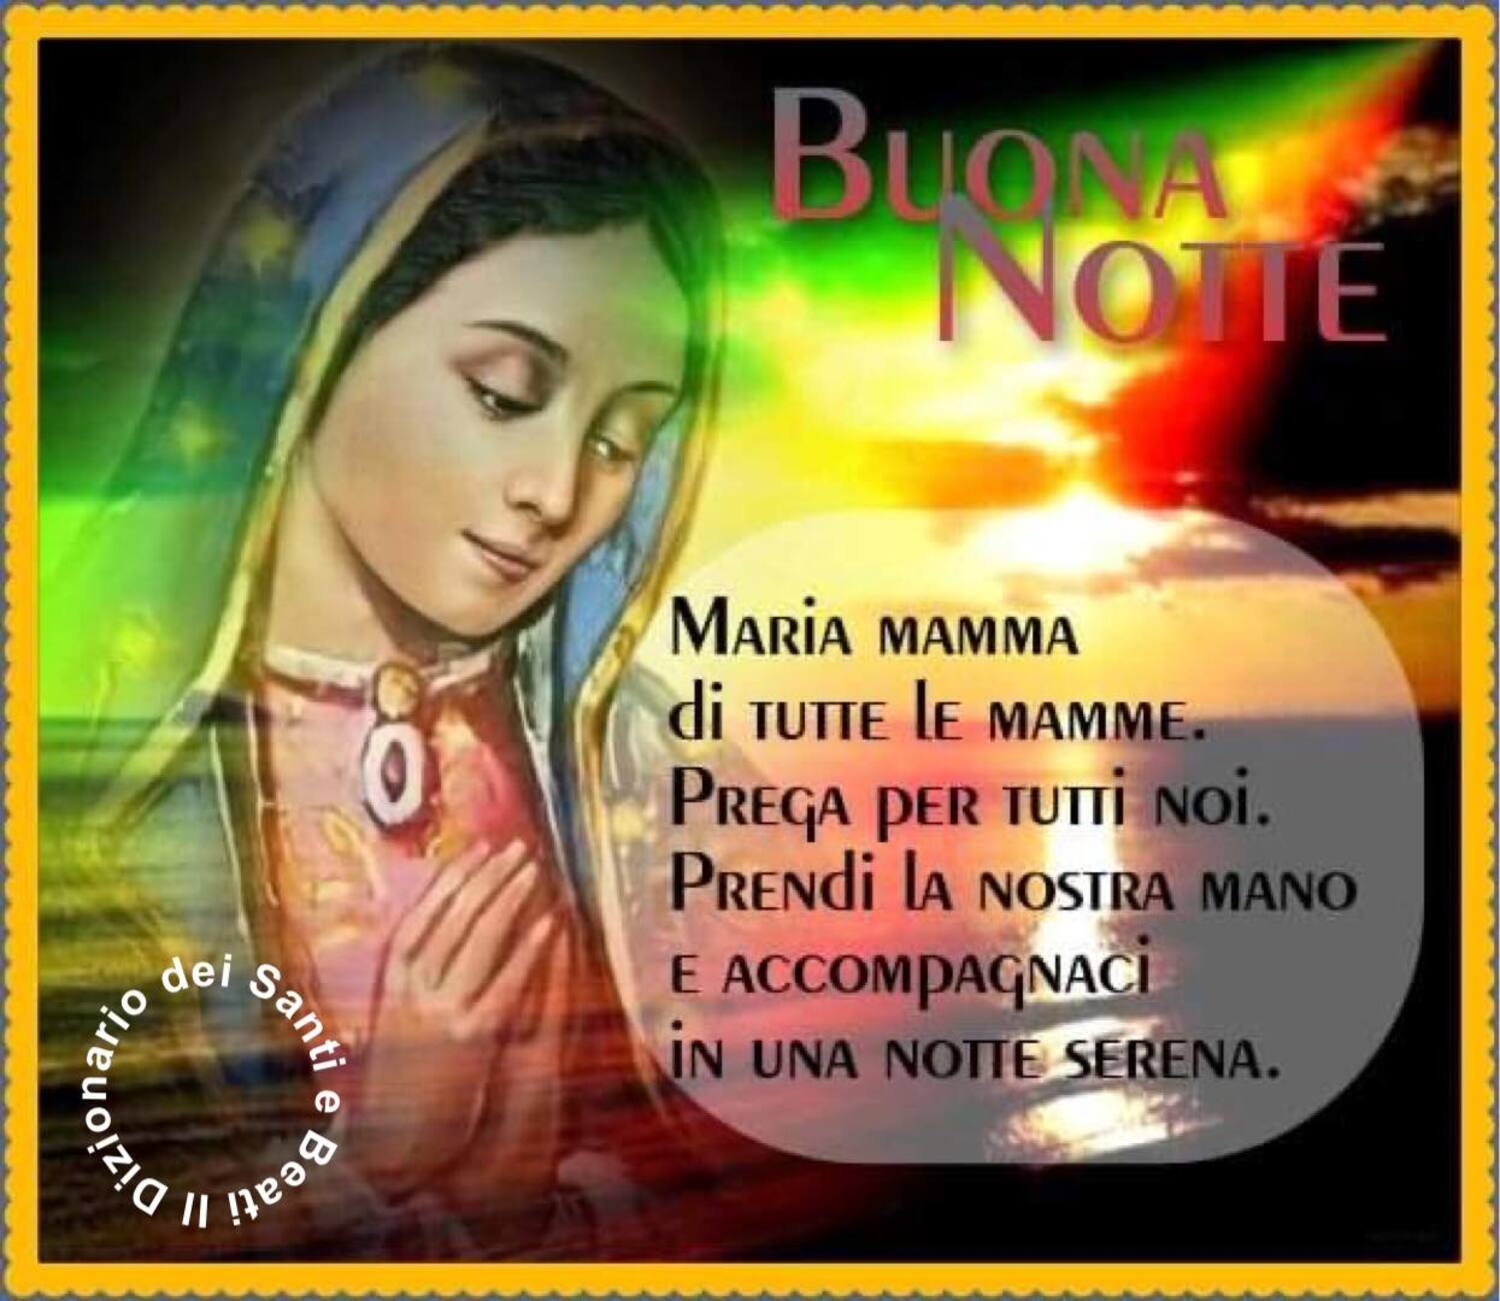 Buona Notte Maria mamma di tutte le mamme prega per tutti noi